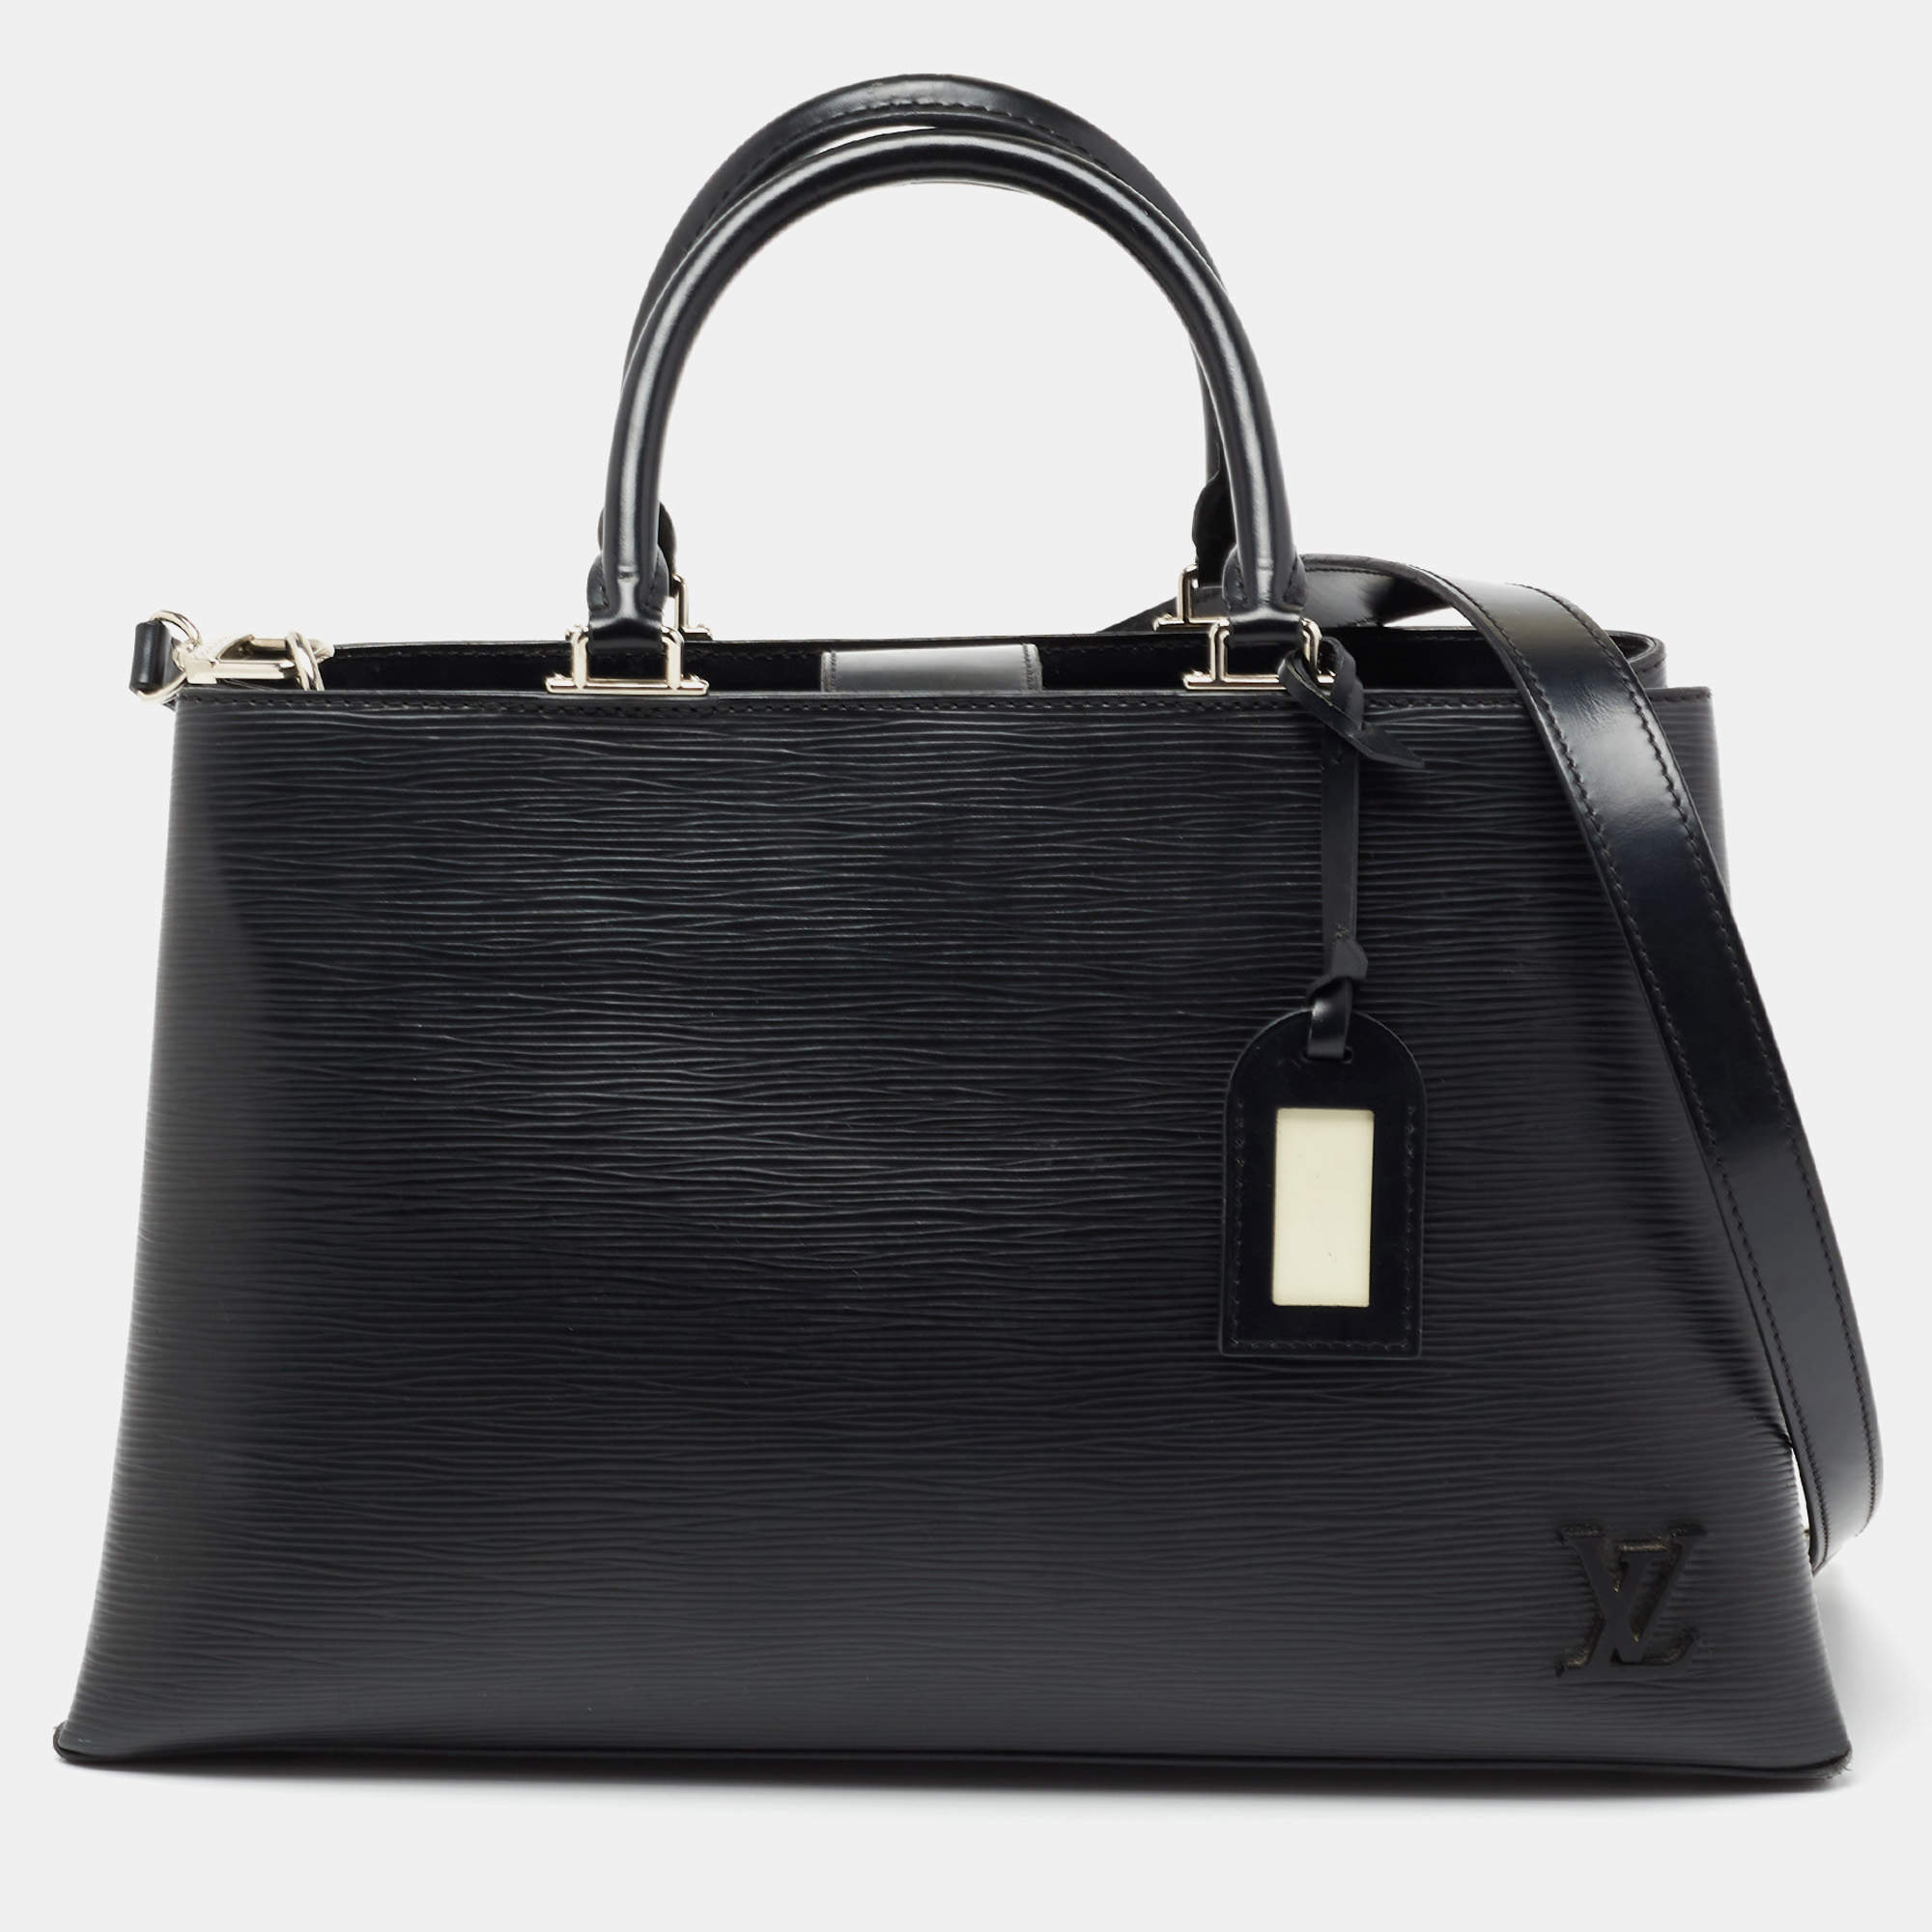 Louis Vuitton Kleber Epi Leather Shoulder Bag in Black